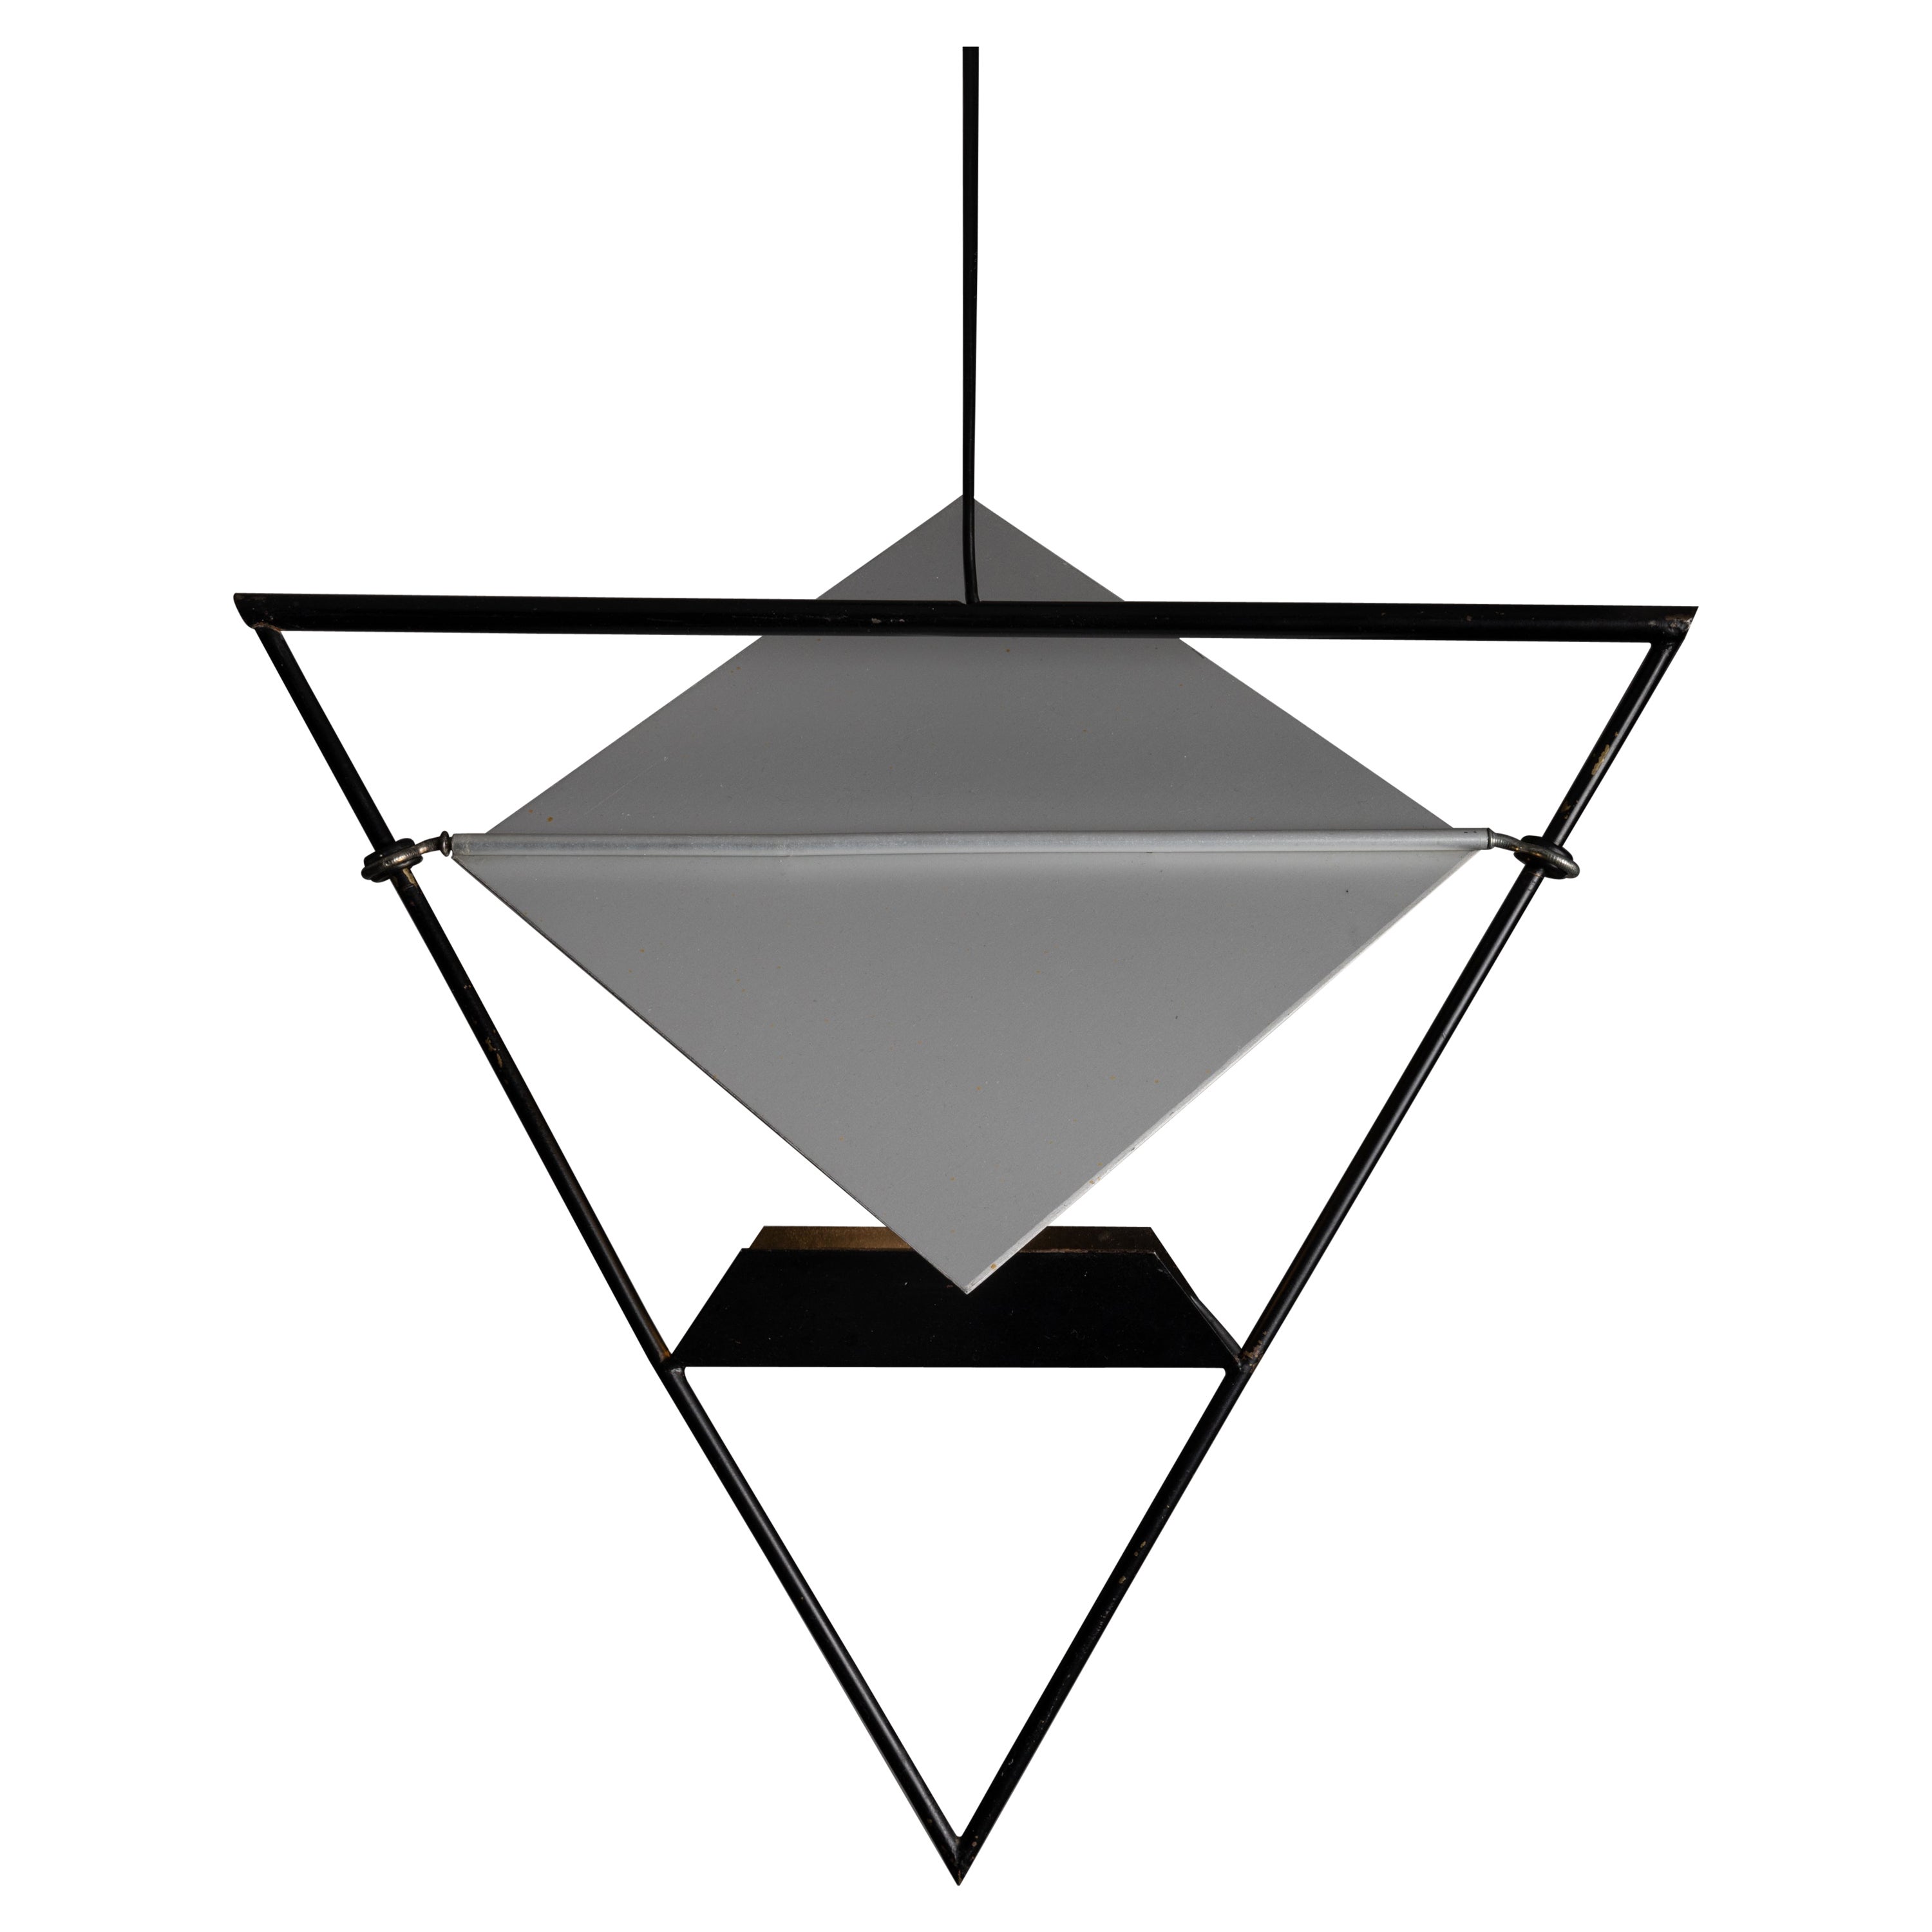 Pendelleuchten von Mario Botta für Artemide. Entworfen und hergestellt in Italien, um 1980. Einzigartige, monochromatische und geometrische Pendelleuchten mit einem anatomischen und kinetischen flachen Schirm. Der Rahmen ist aus emailliertem Stahl